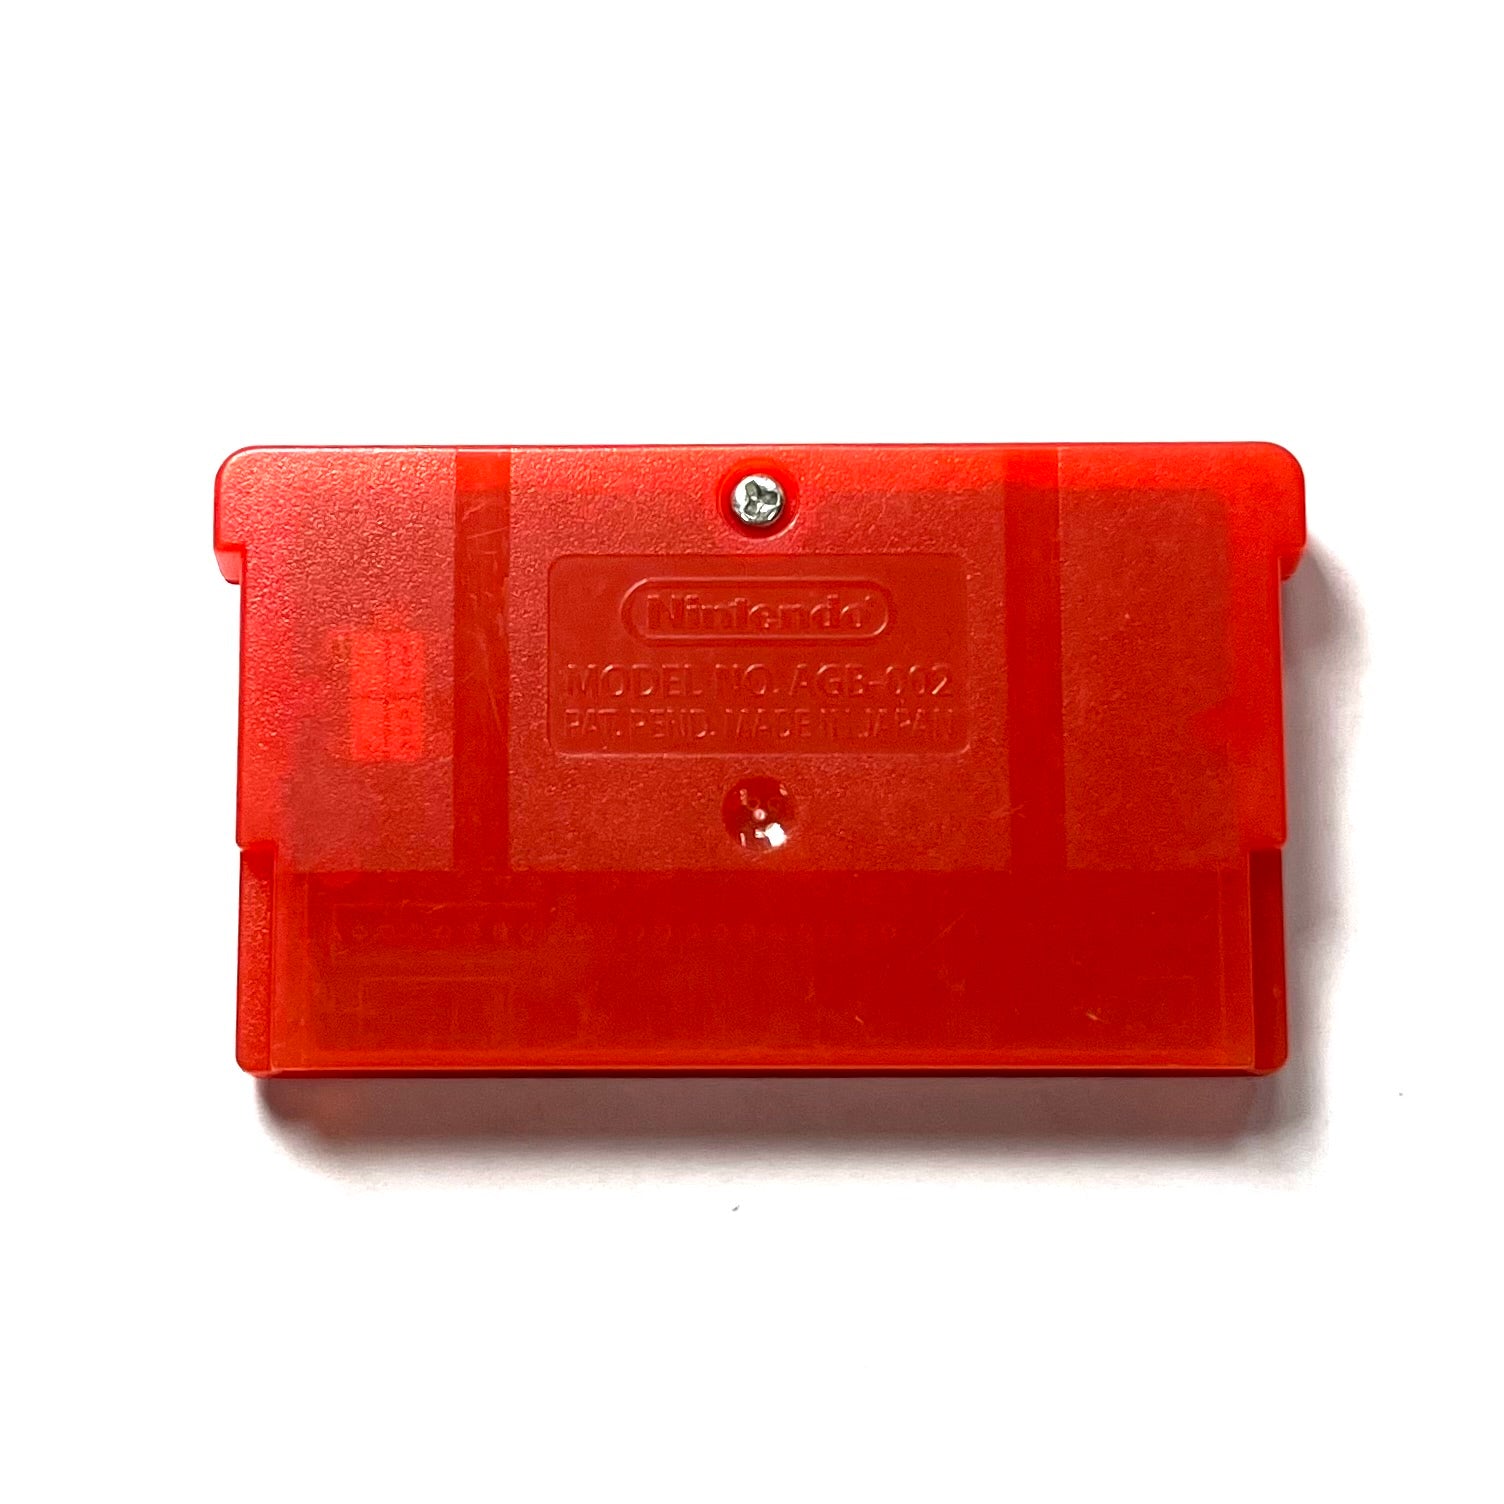 pokemon fire red cartridge label